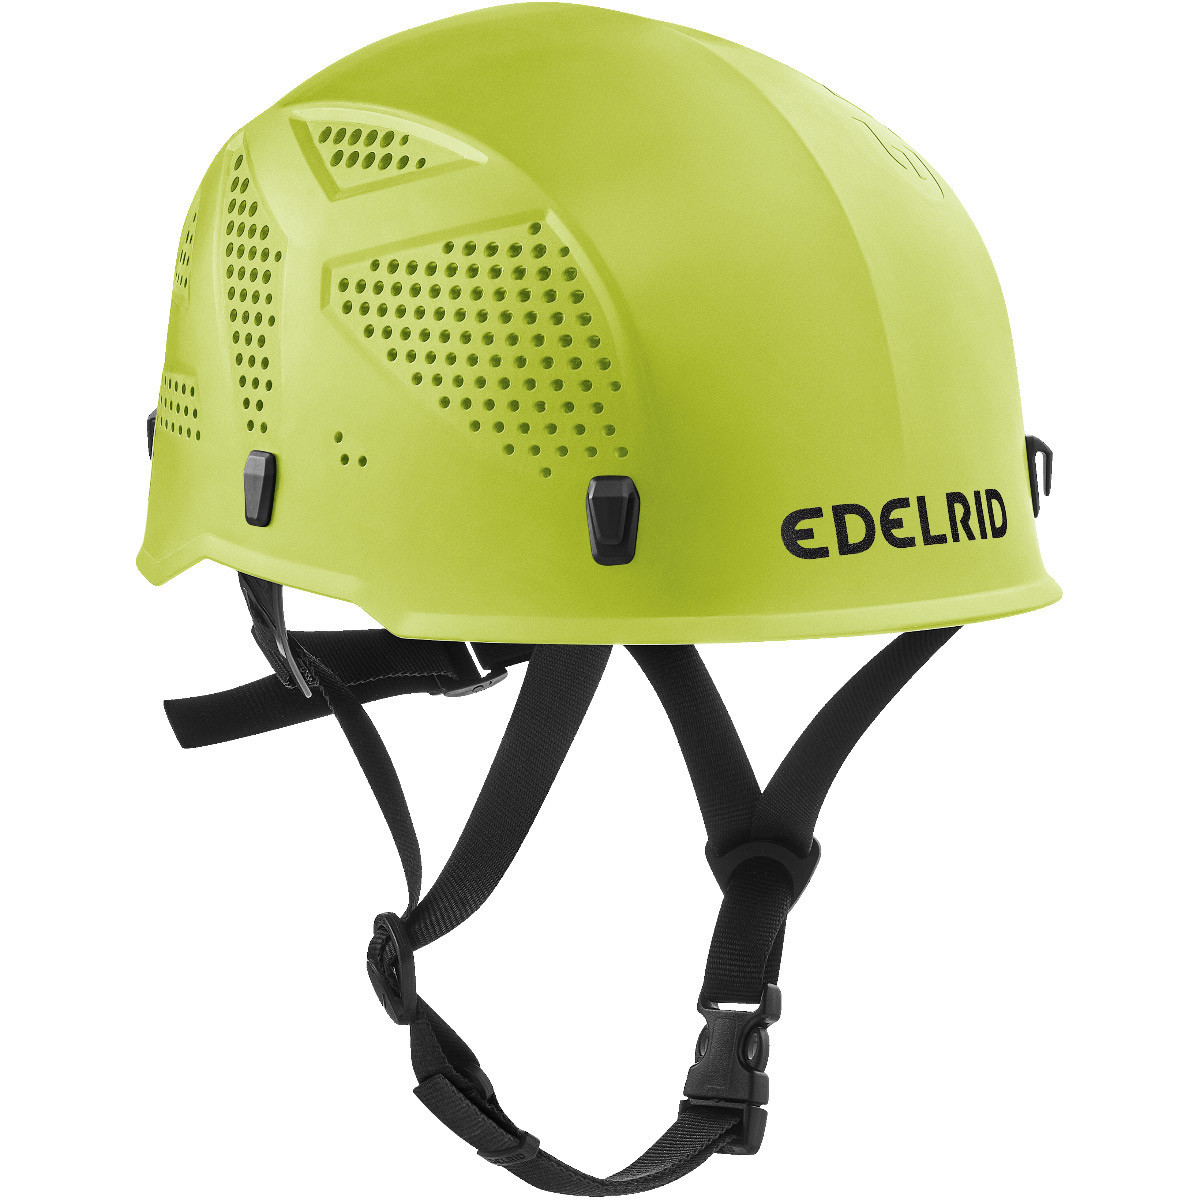 エーデルリッド ウルトラライト3 (ER72049) ／ クライミング 登山 ヘルメット オールラウンド 安全 頭囲54-60cm